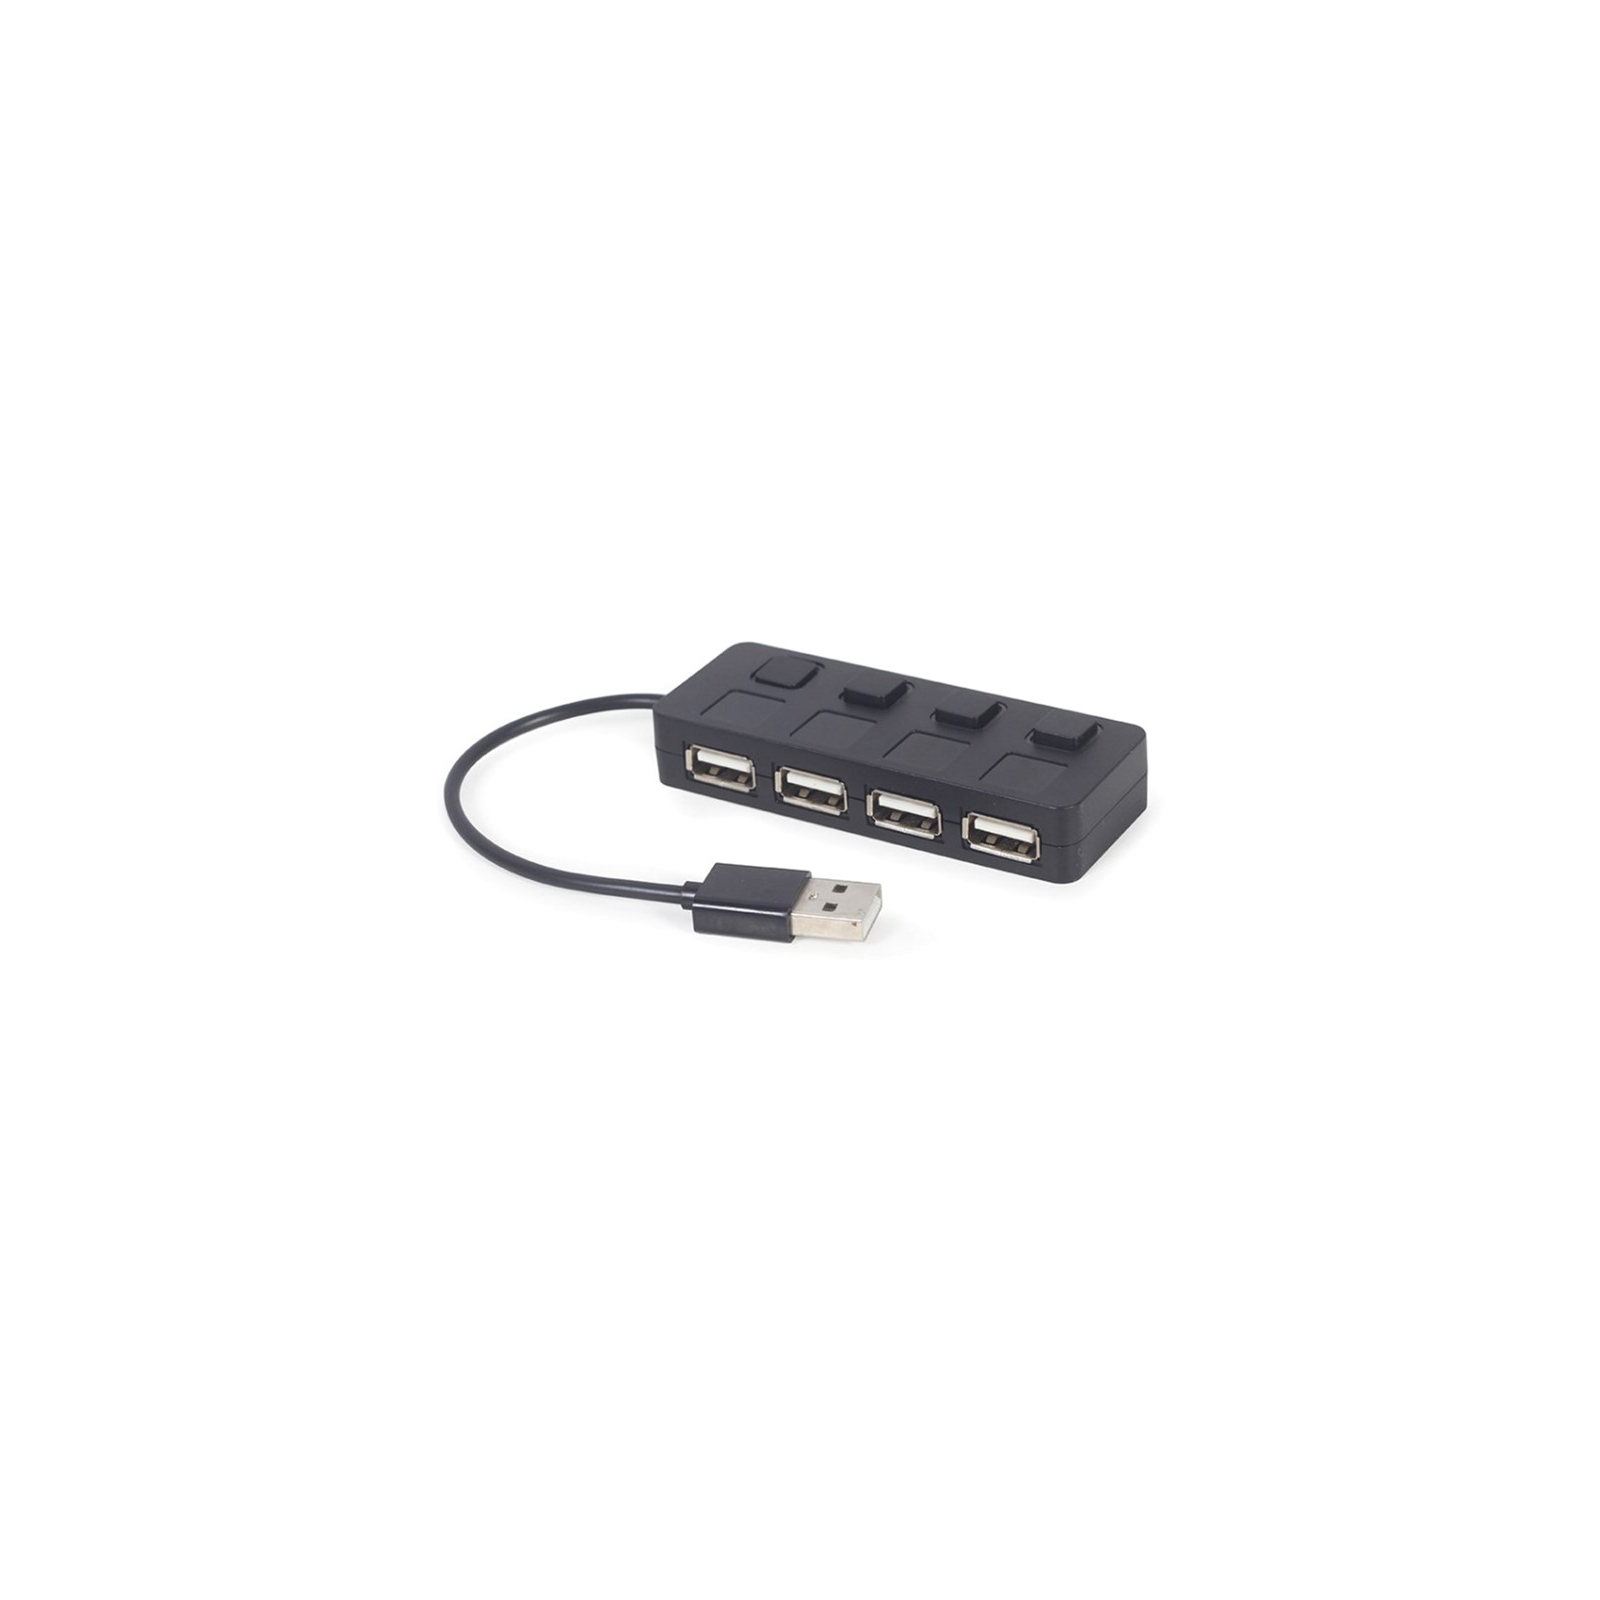 Концентратор Gembird USB 2.0 4 ports switch black (UHB-U2P4-05) зображення 2